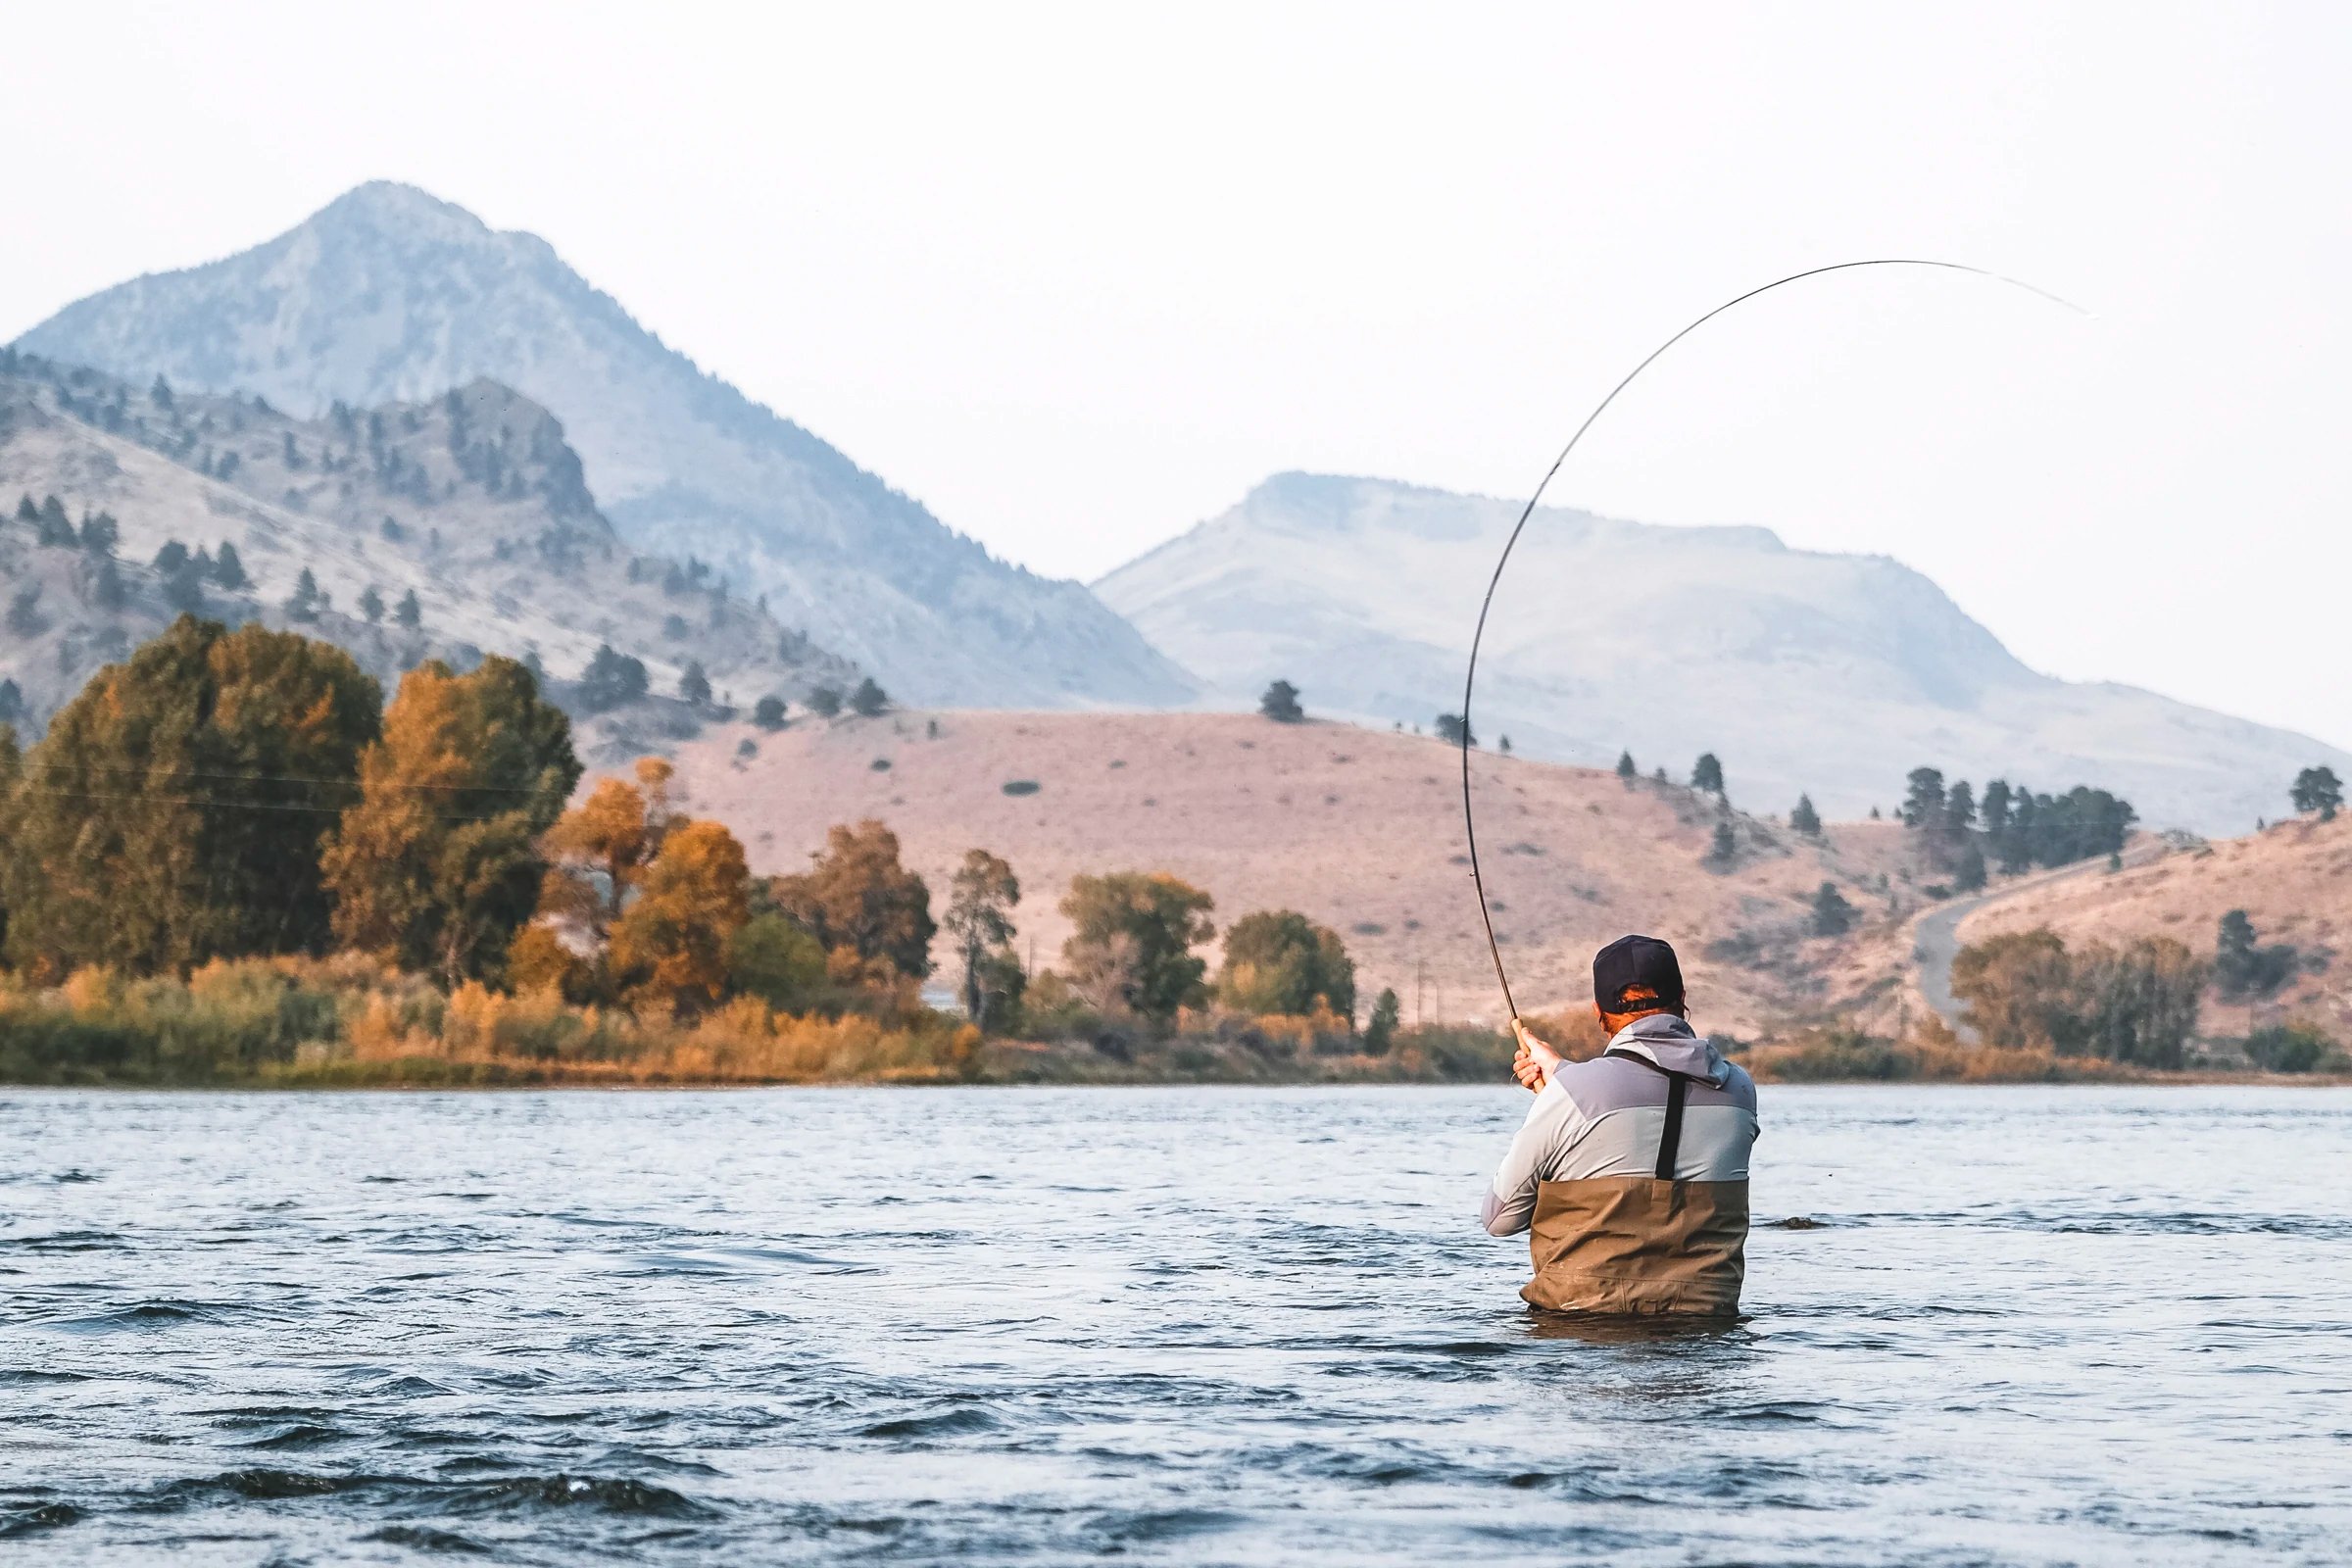 Skwala Fishing - Inspiring the relentless pursuit.